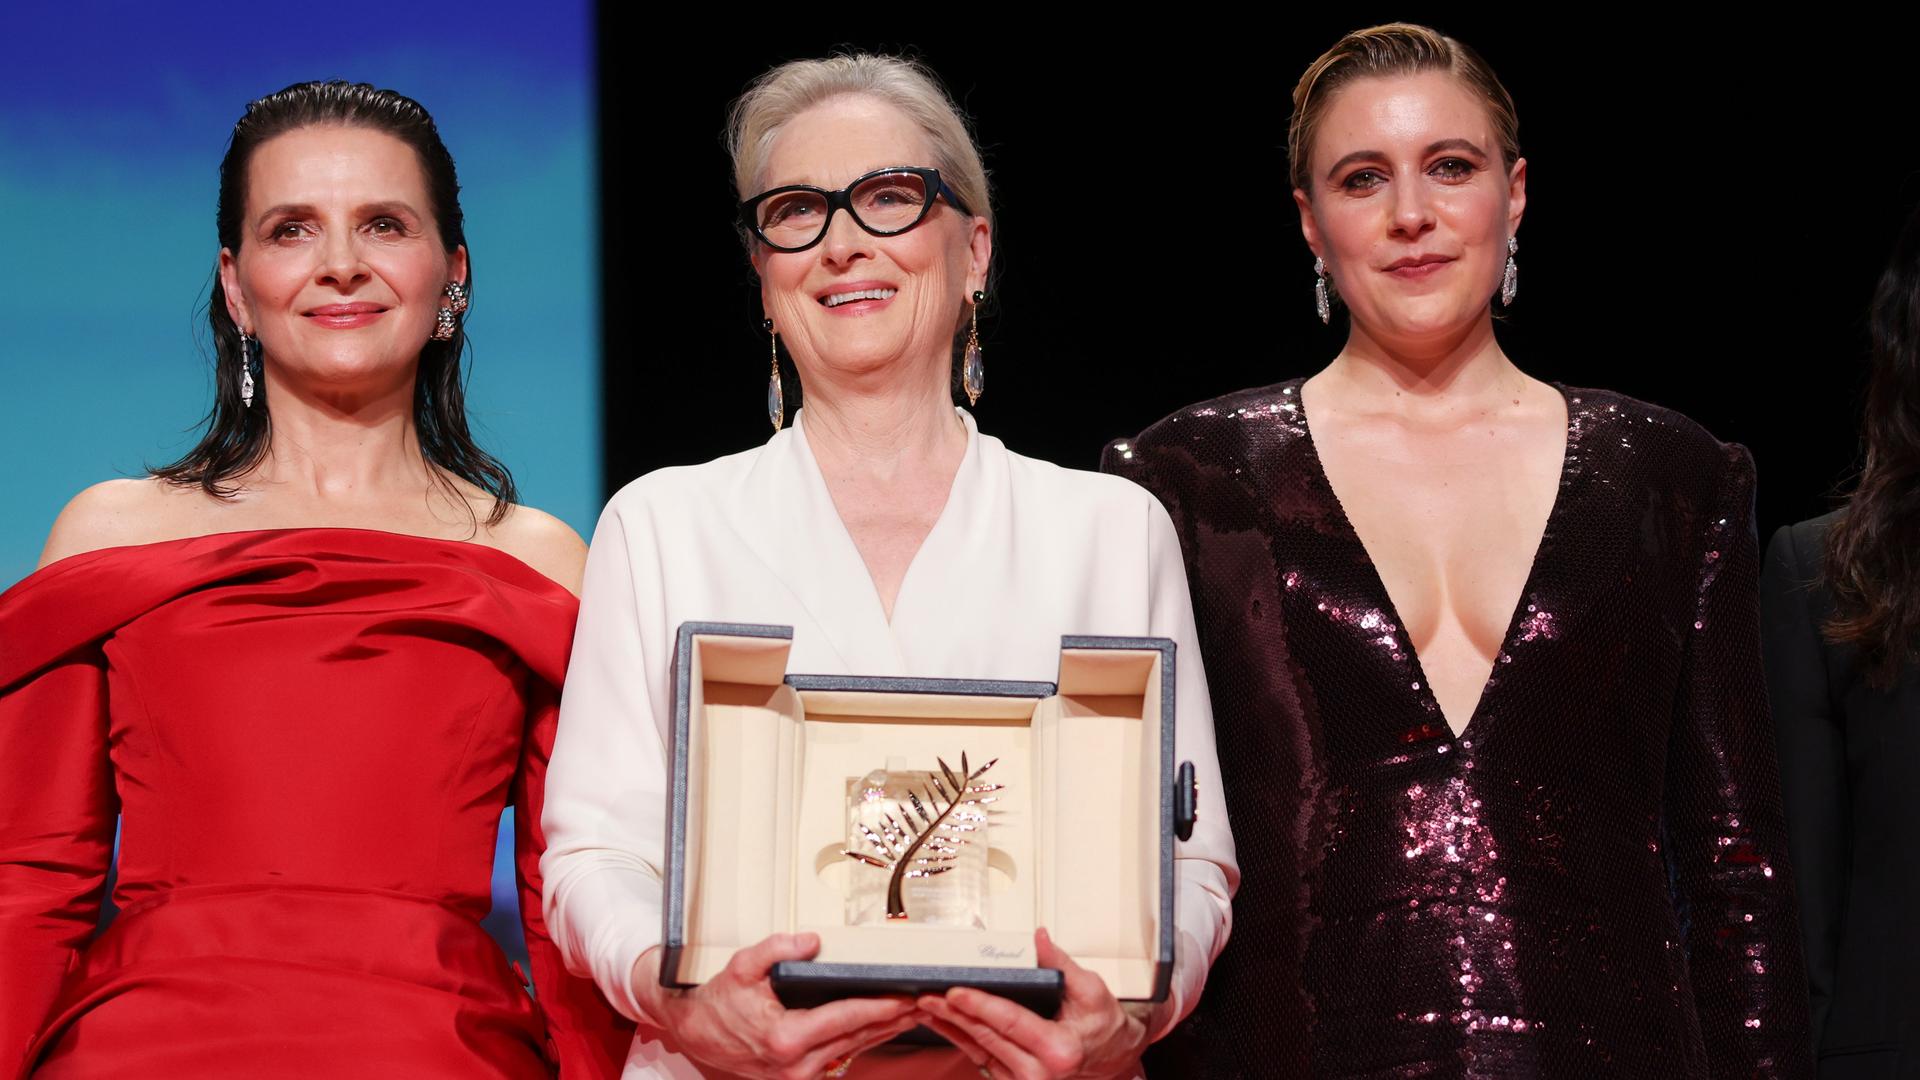 Schauspielerin Meryl Streep (Mitte) hält die Goldene Palme in der Hand. Neben ihr Jury-Mitglied Juliette Binoche und Jury-Präsidentin Greta Gerwig.